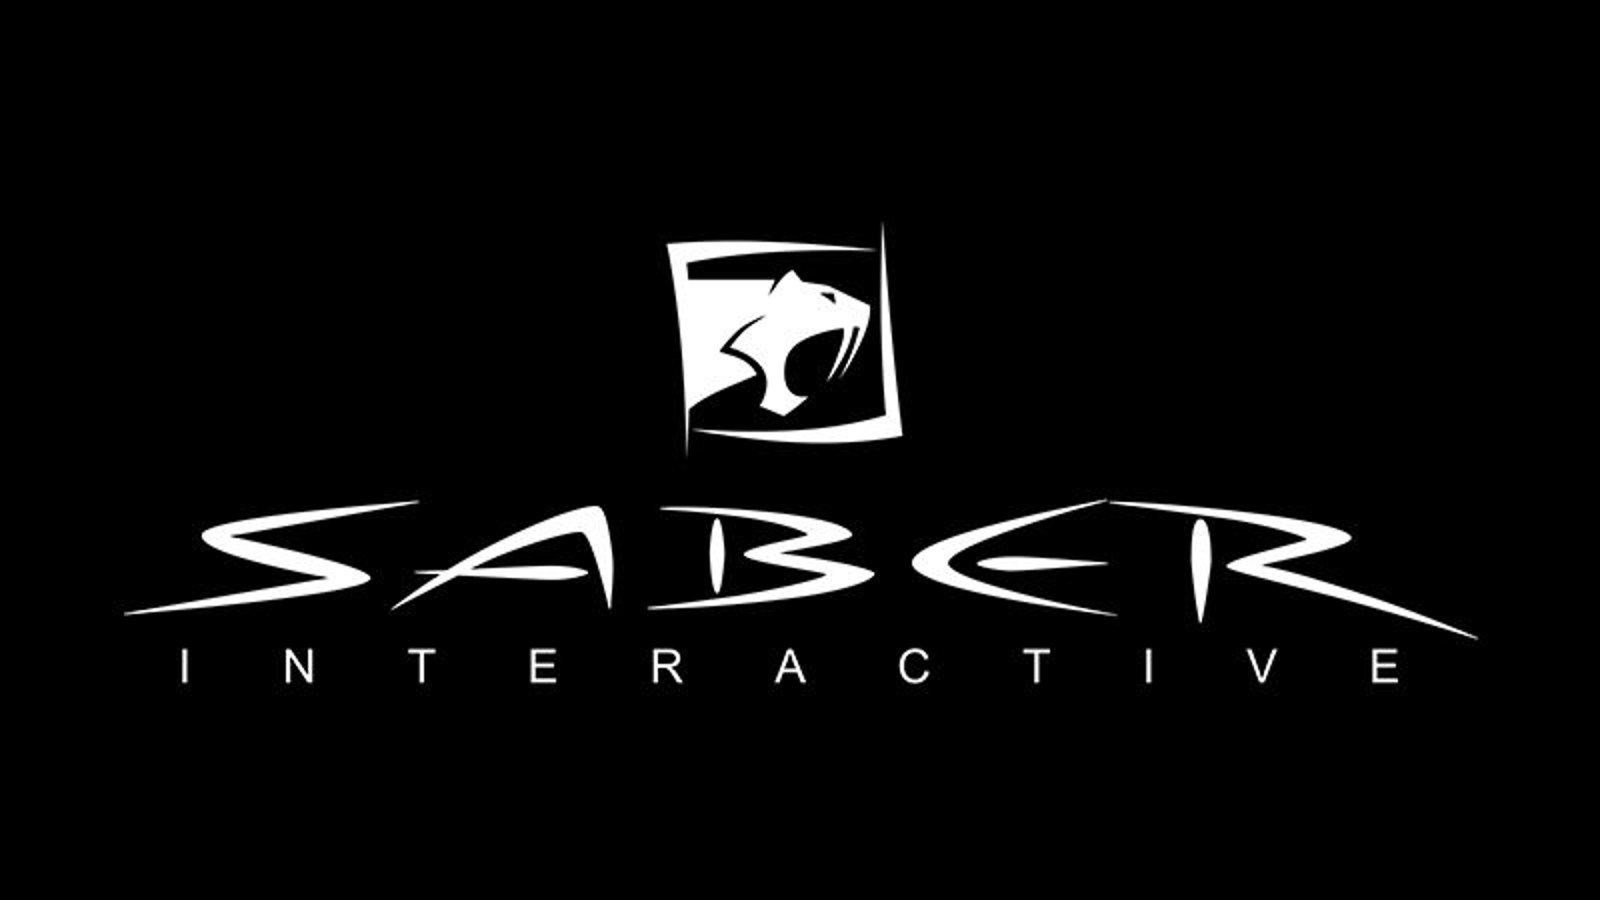 امبریسر گروپ استودیو Saber Interactive را به شرکت دیگری خواهد فروخت